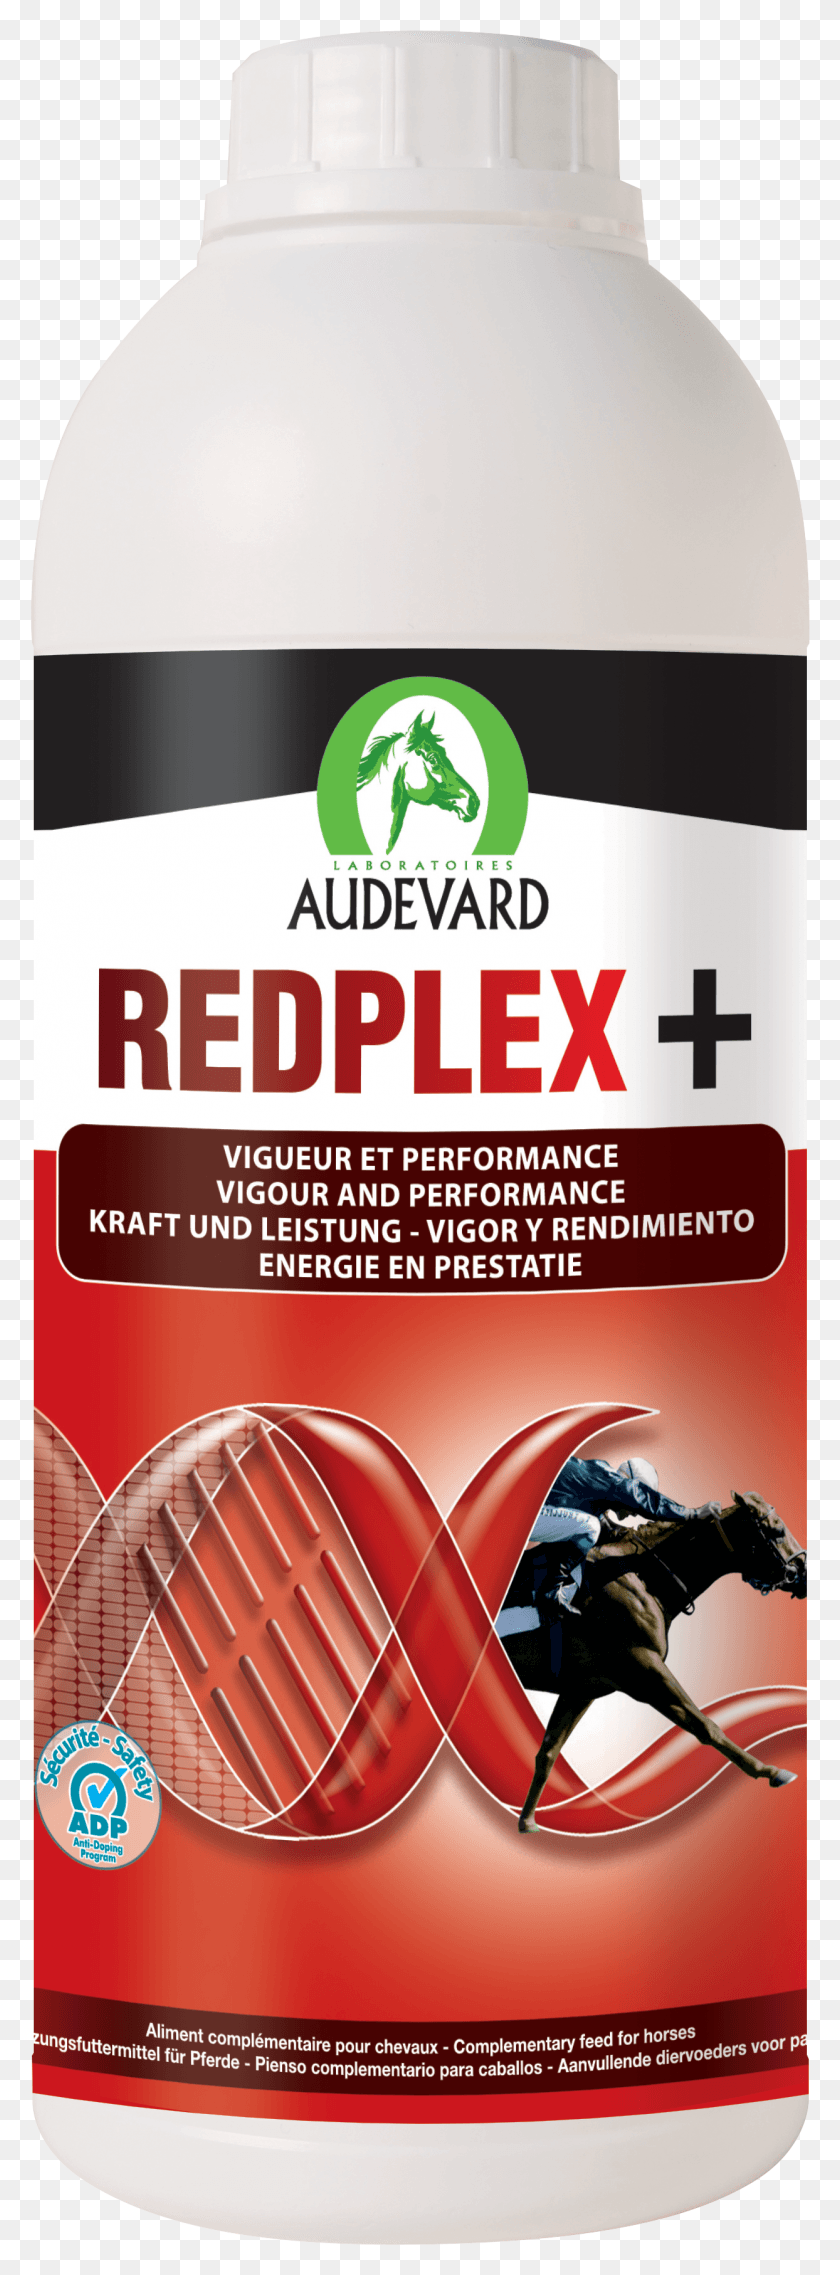 1244x3533 Descargar Png / Audevard Redplex Aumentar Los Suplementos De Los Glóbulos Rojos, Cartel, Publicidad, Volante Hd Png